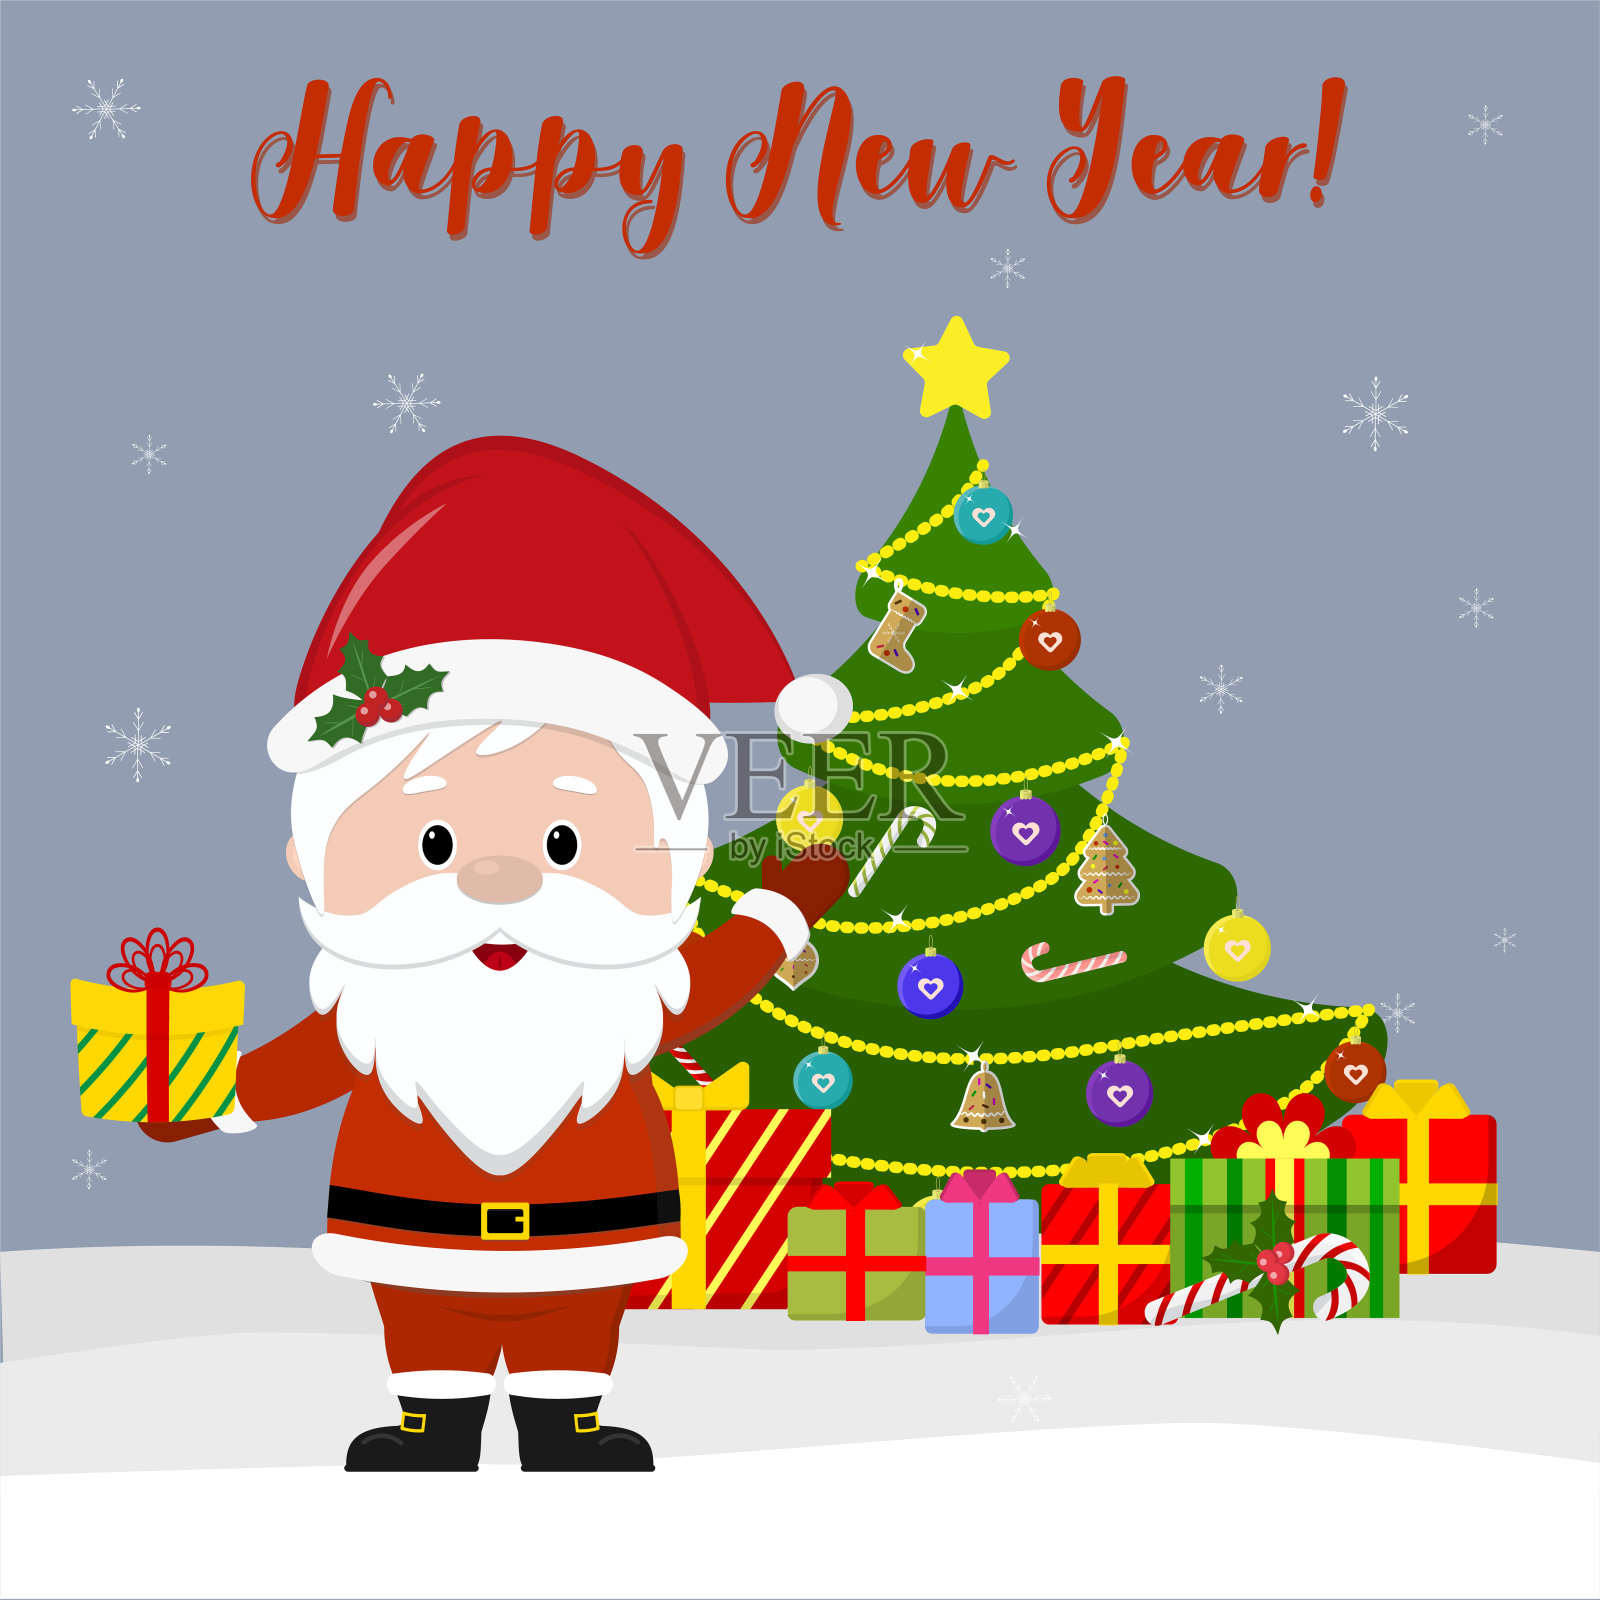 新年快乐，圣诞贺卡快乐。可爱的圣诞老人拿着礼物，旁边的圣诞树和盒子里放着礼物，在冬天的雪花背景下。卡通风格,向量设计模板素材